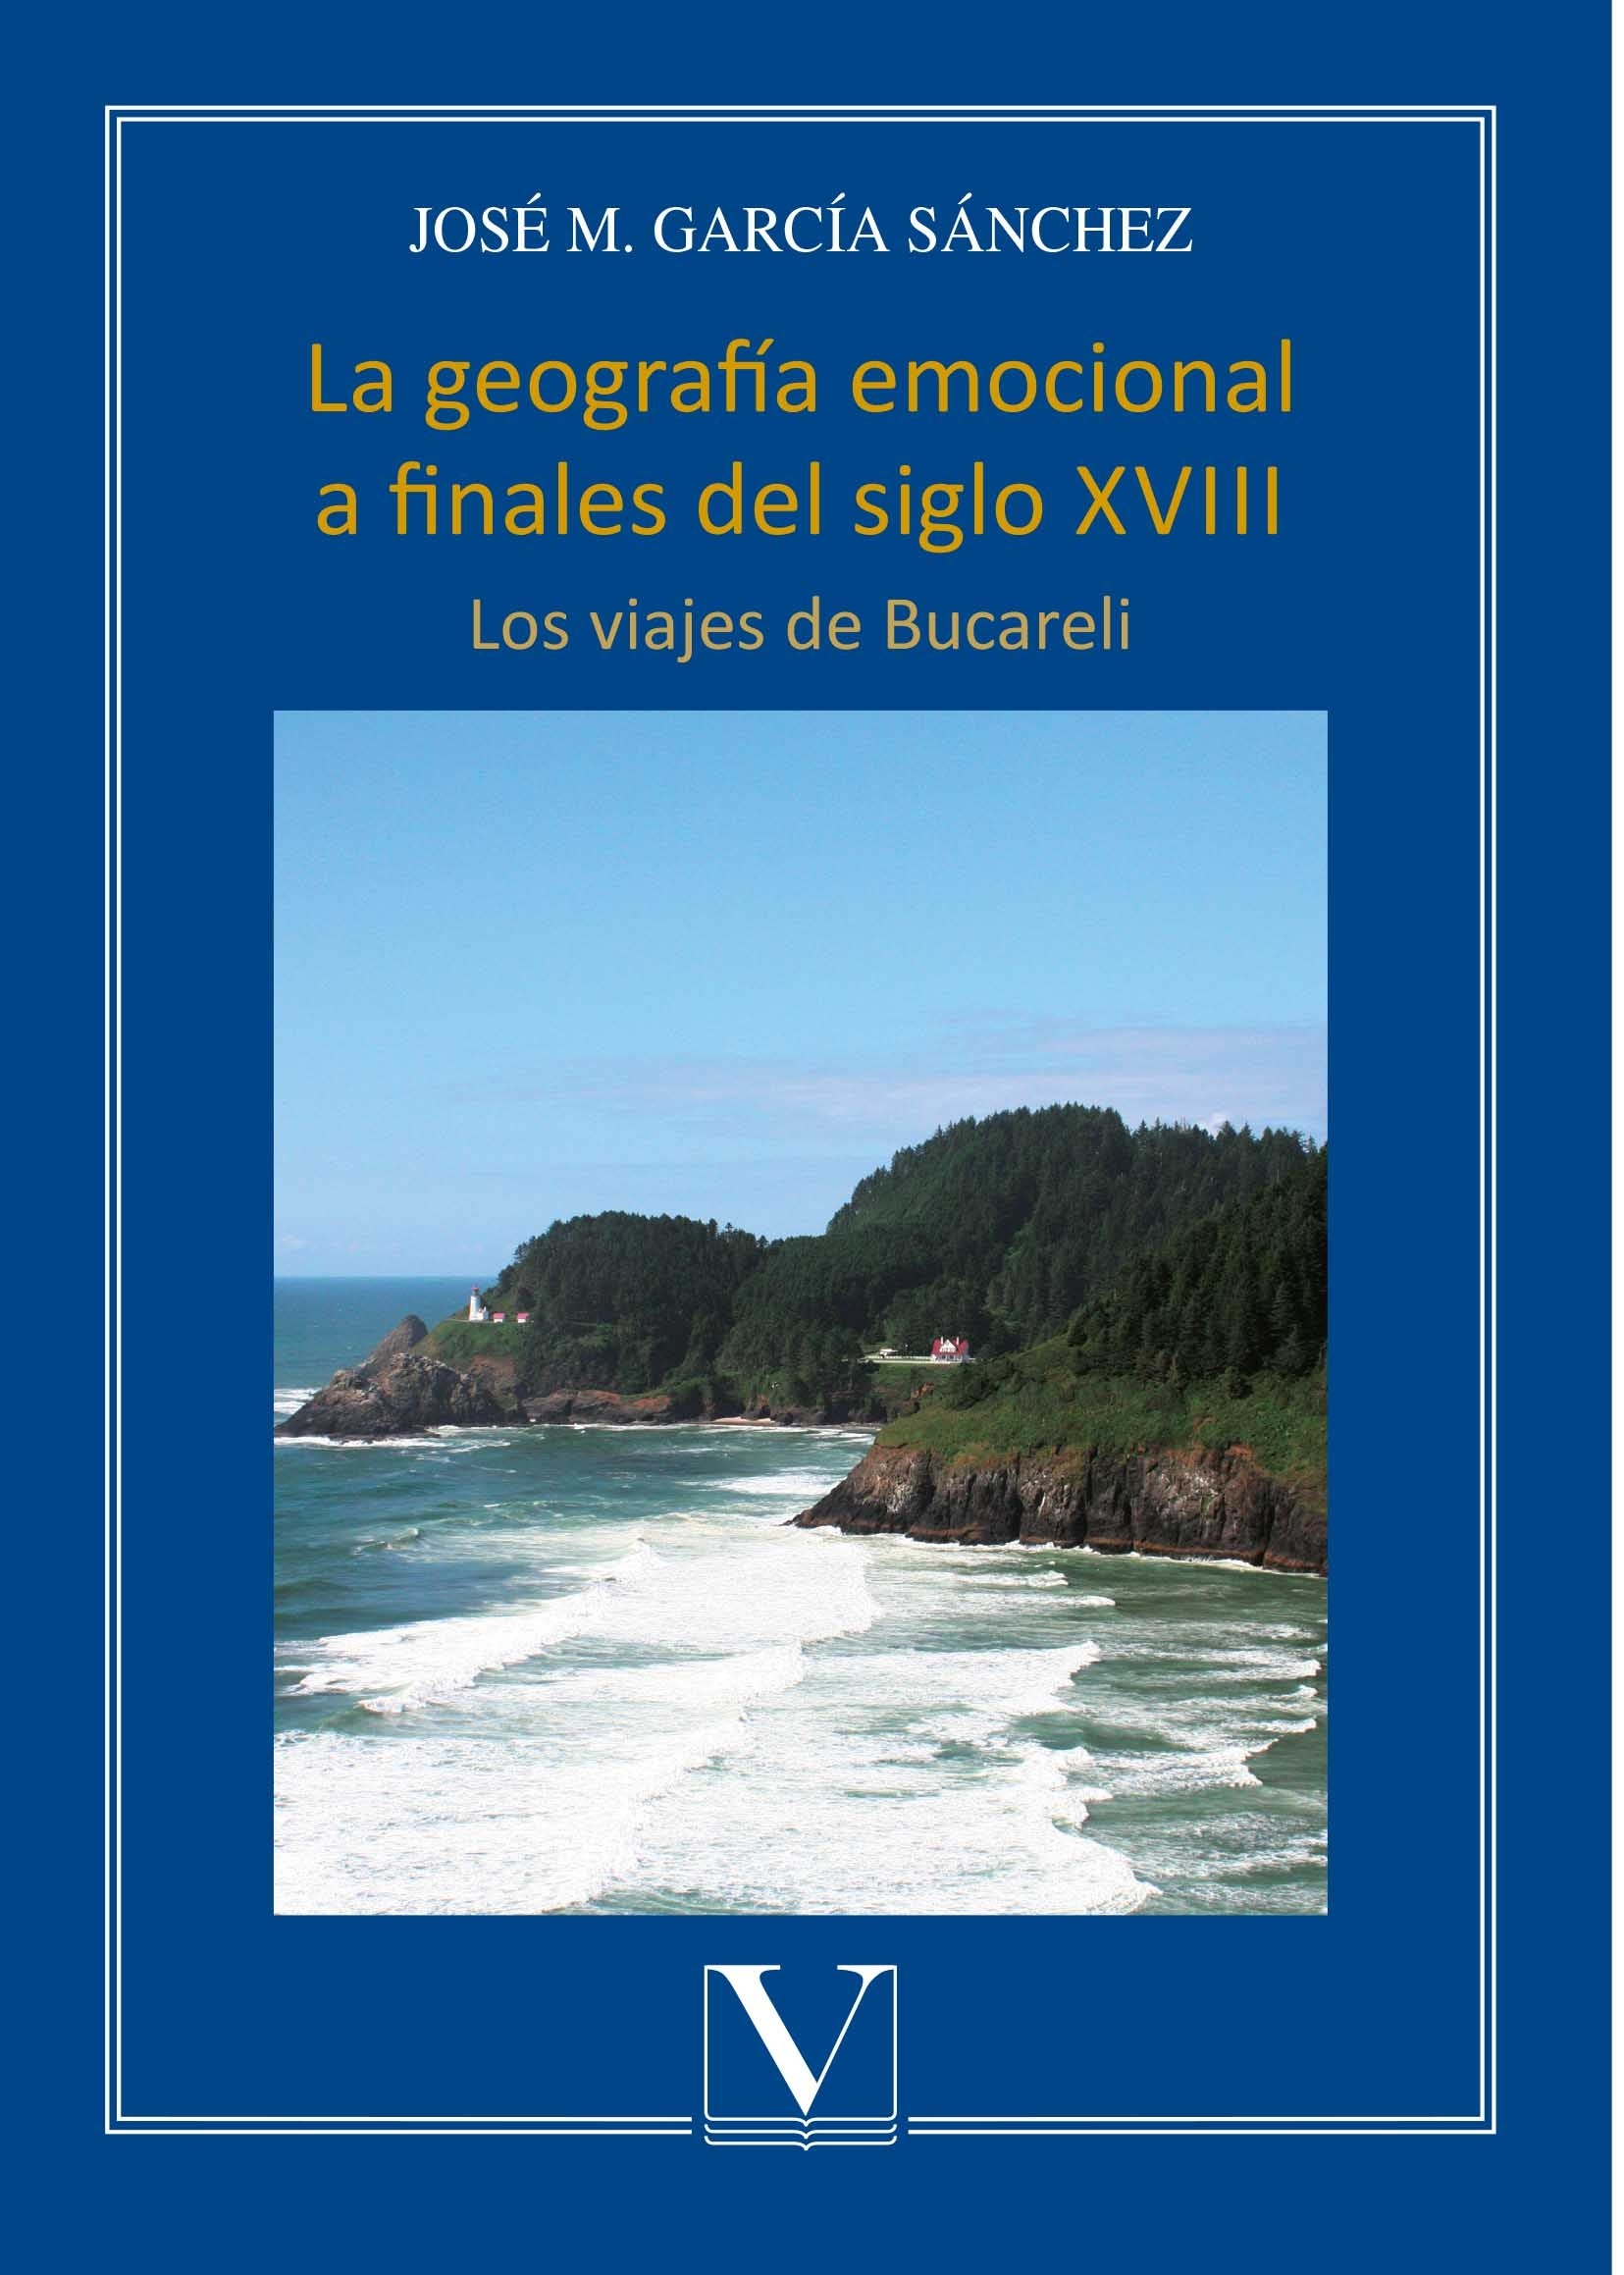 La geografía emocional a finales del siglo XVIII "Los viajes de Bucareli"